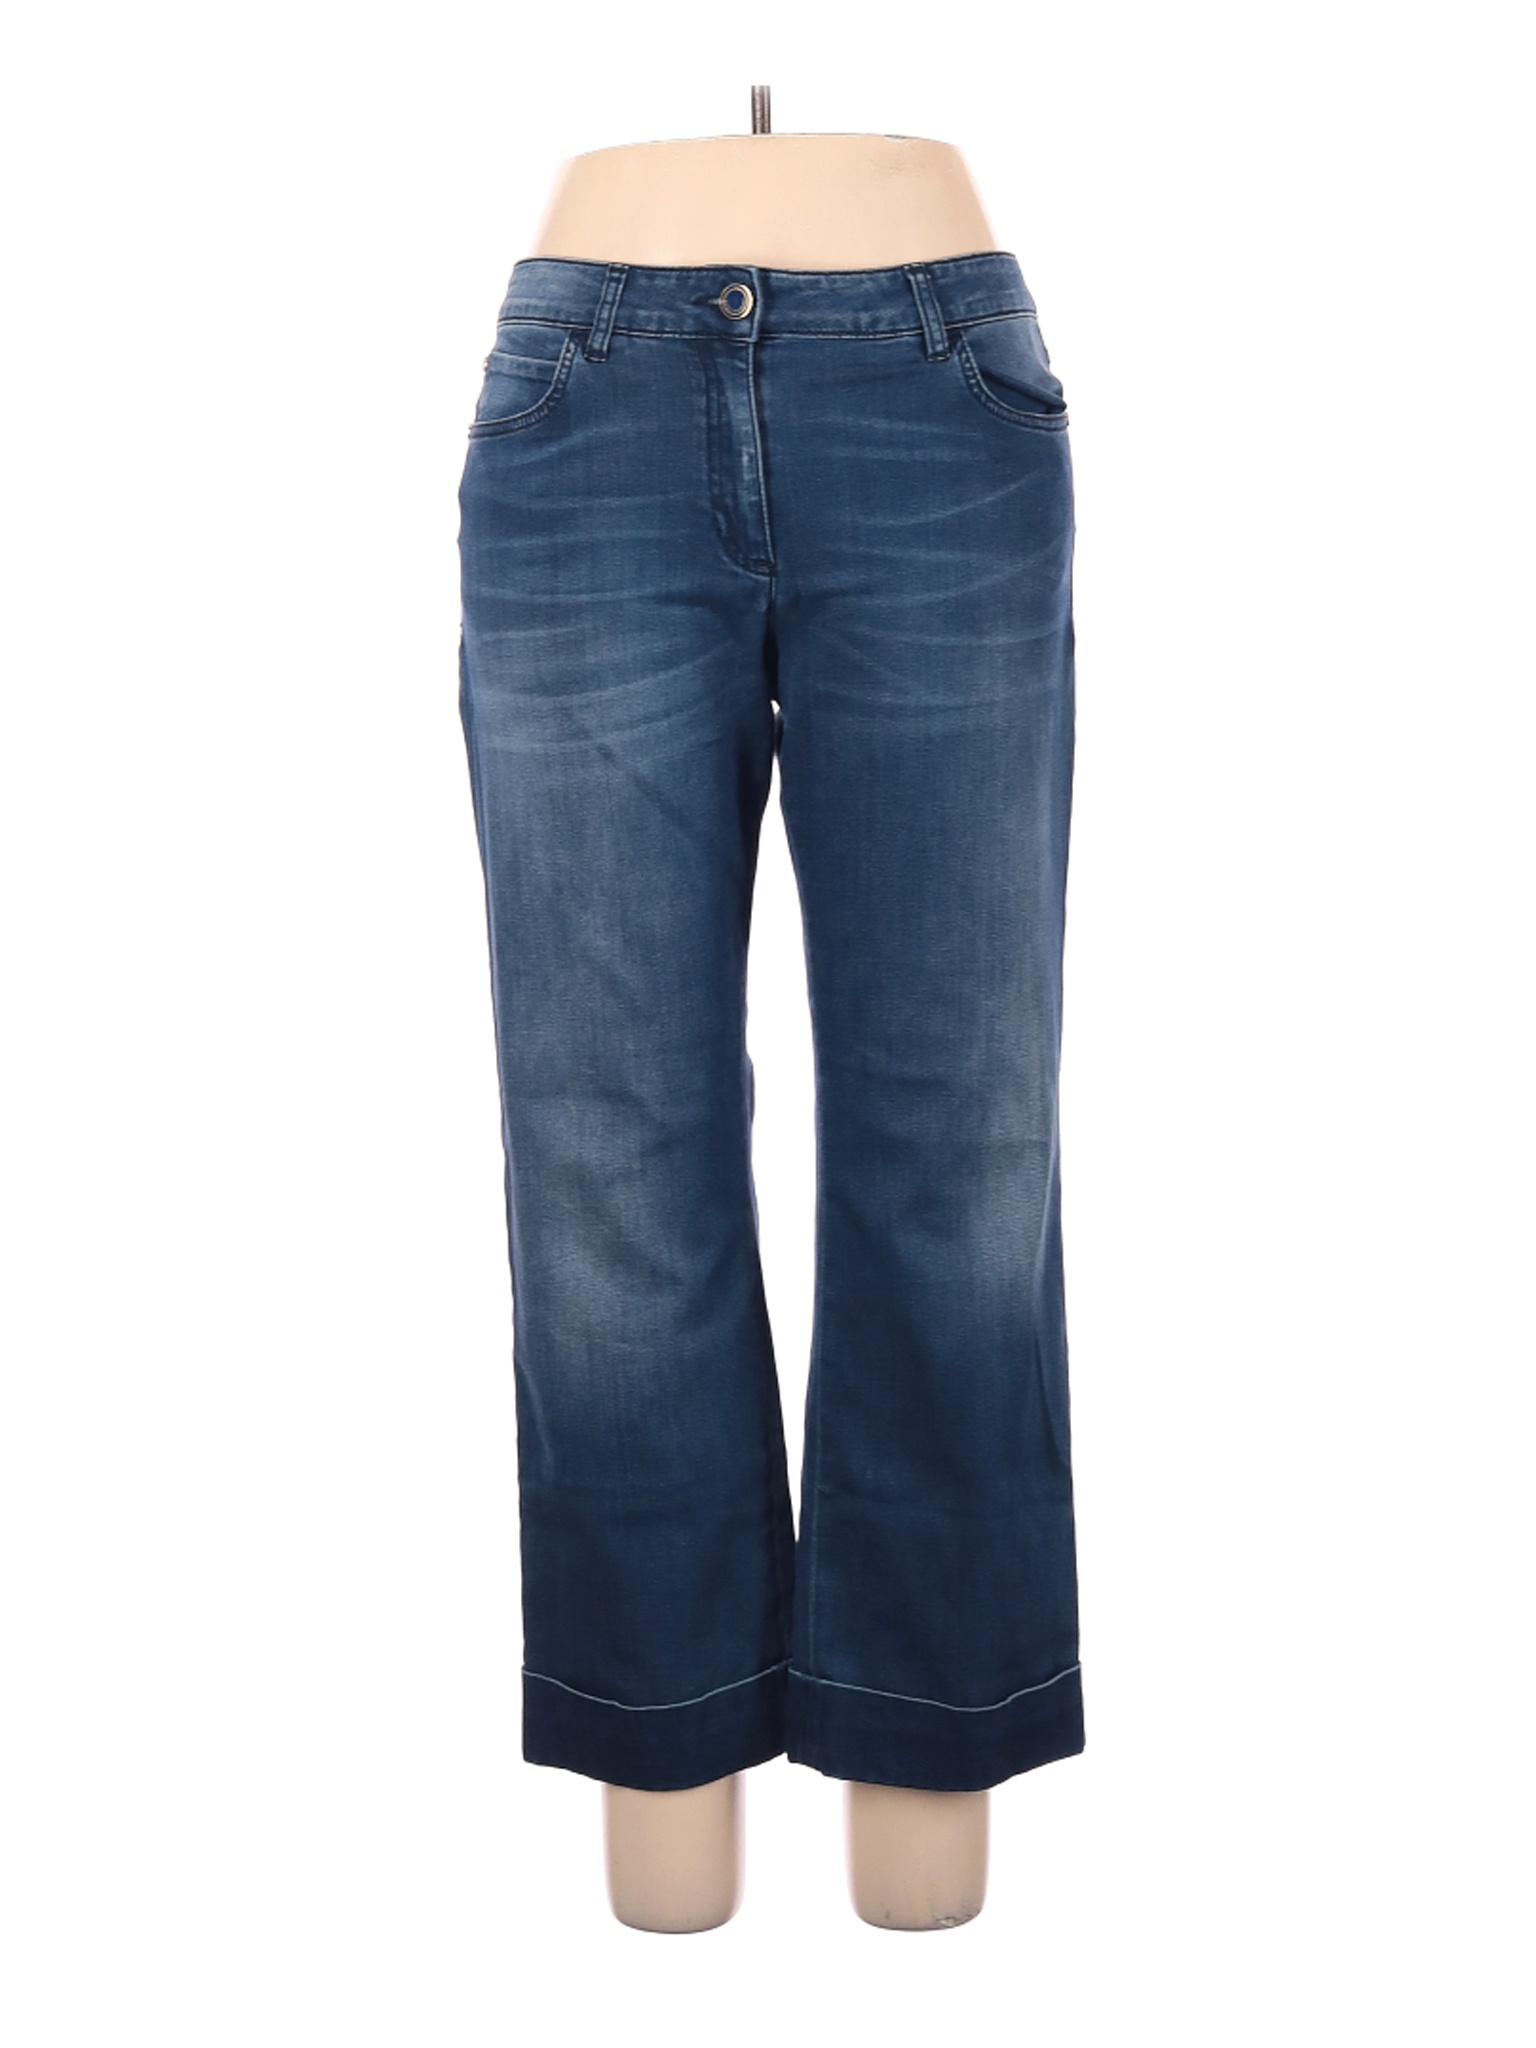 Luisa Spagnoli Women Blue Jeans 46 eur | eBay